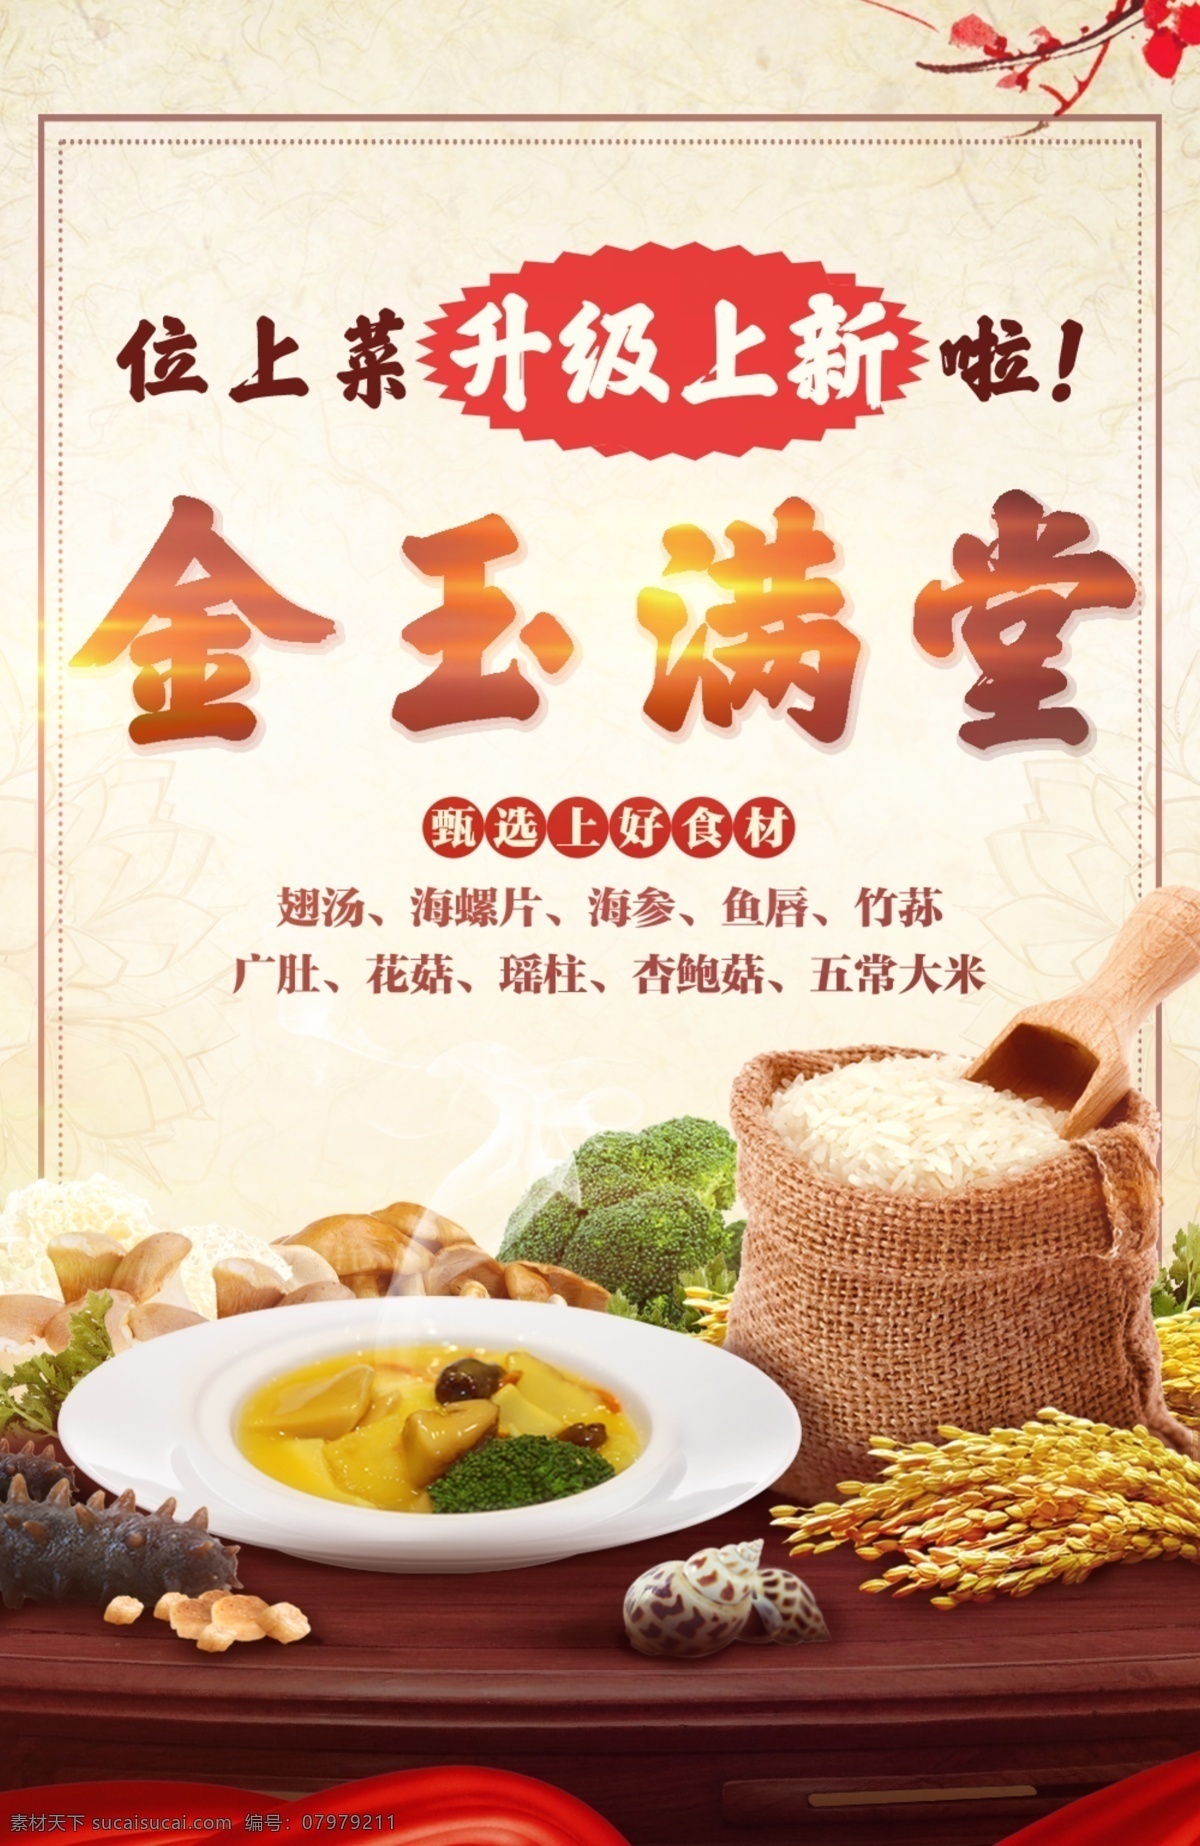 菜品 食材原料 健康有机食材 中国元素 大米 海螺 海参 菌菇 金玉满堂 分层